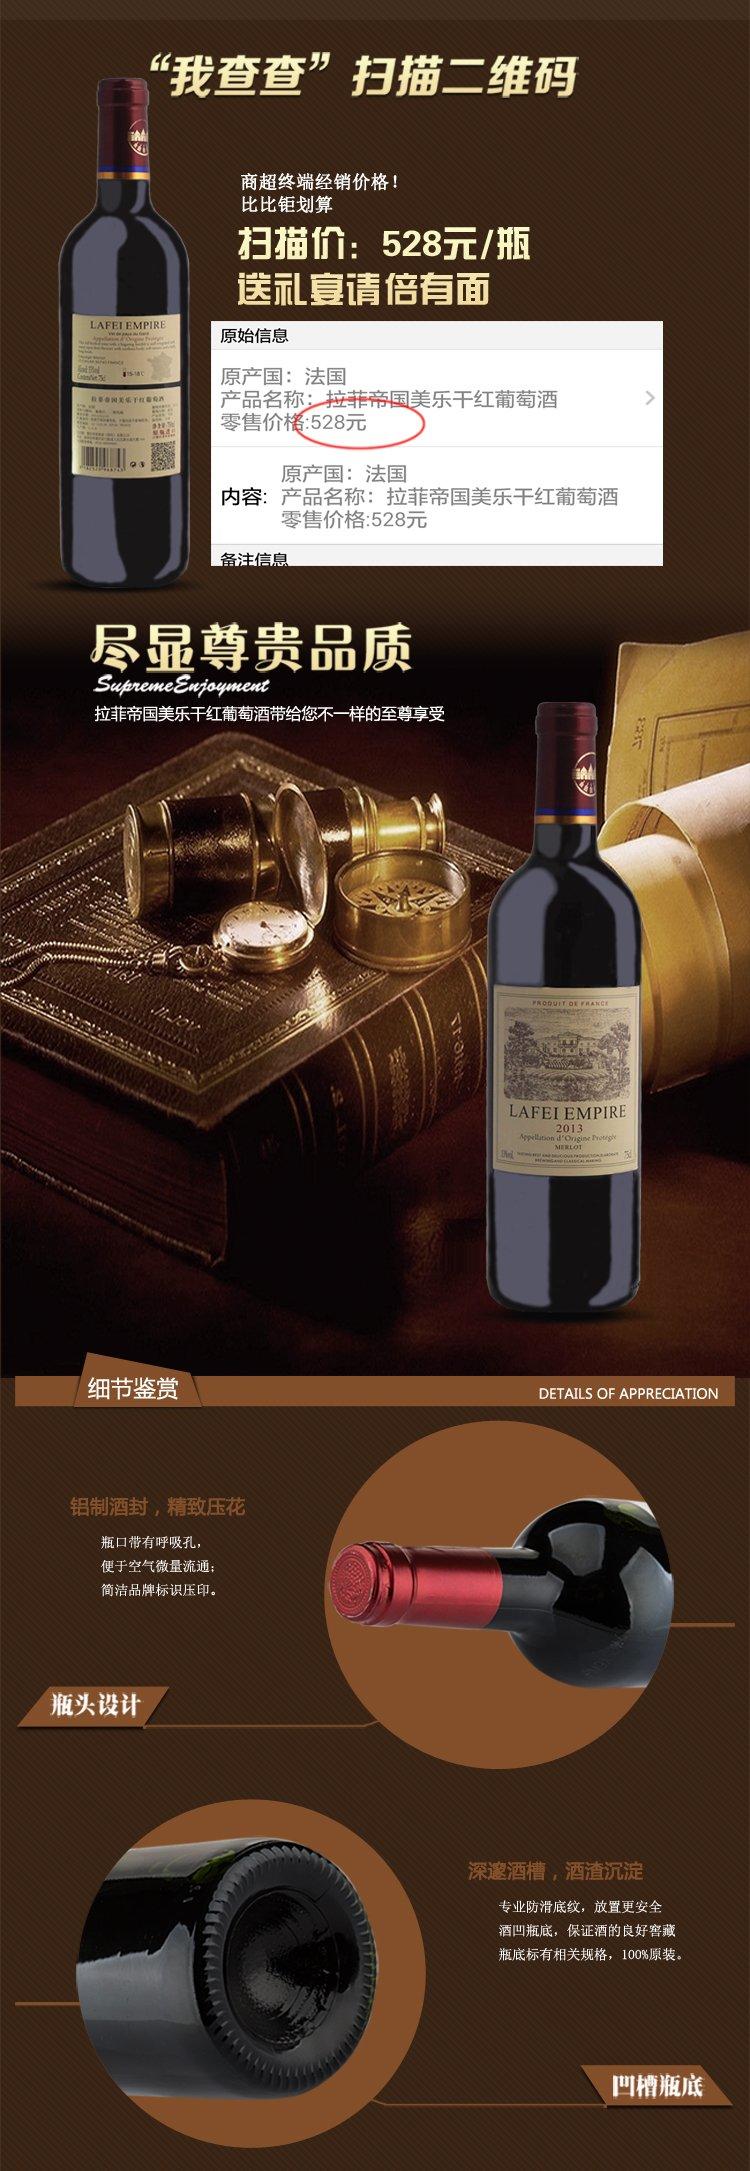 法国原瓶进口原装红酒拉菲帝国美乐干红葡萄酒750ml六支装红酒整箱促销